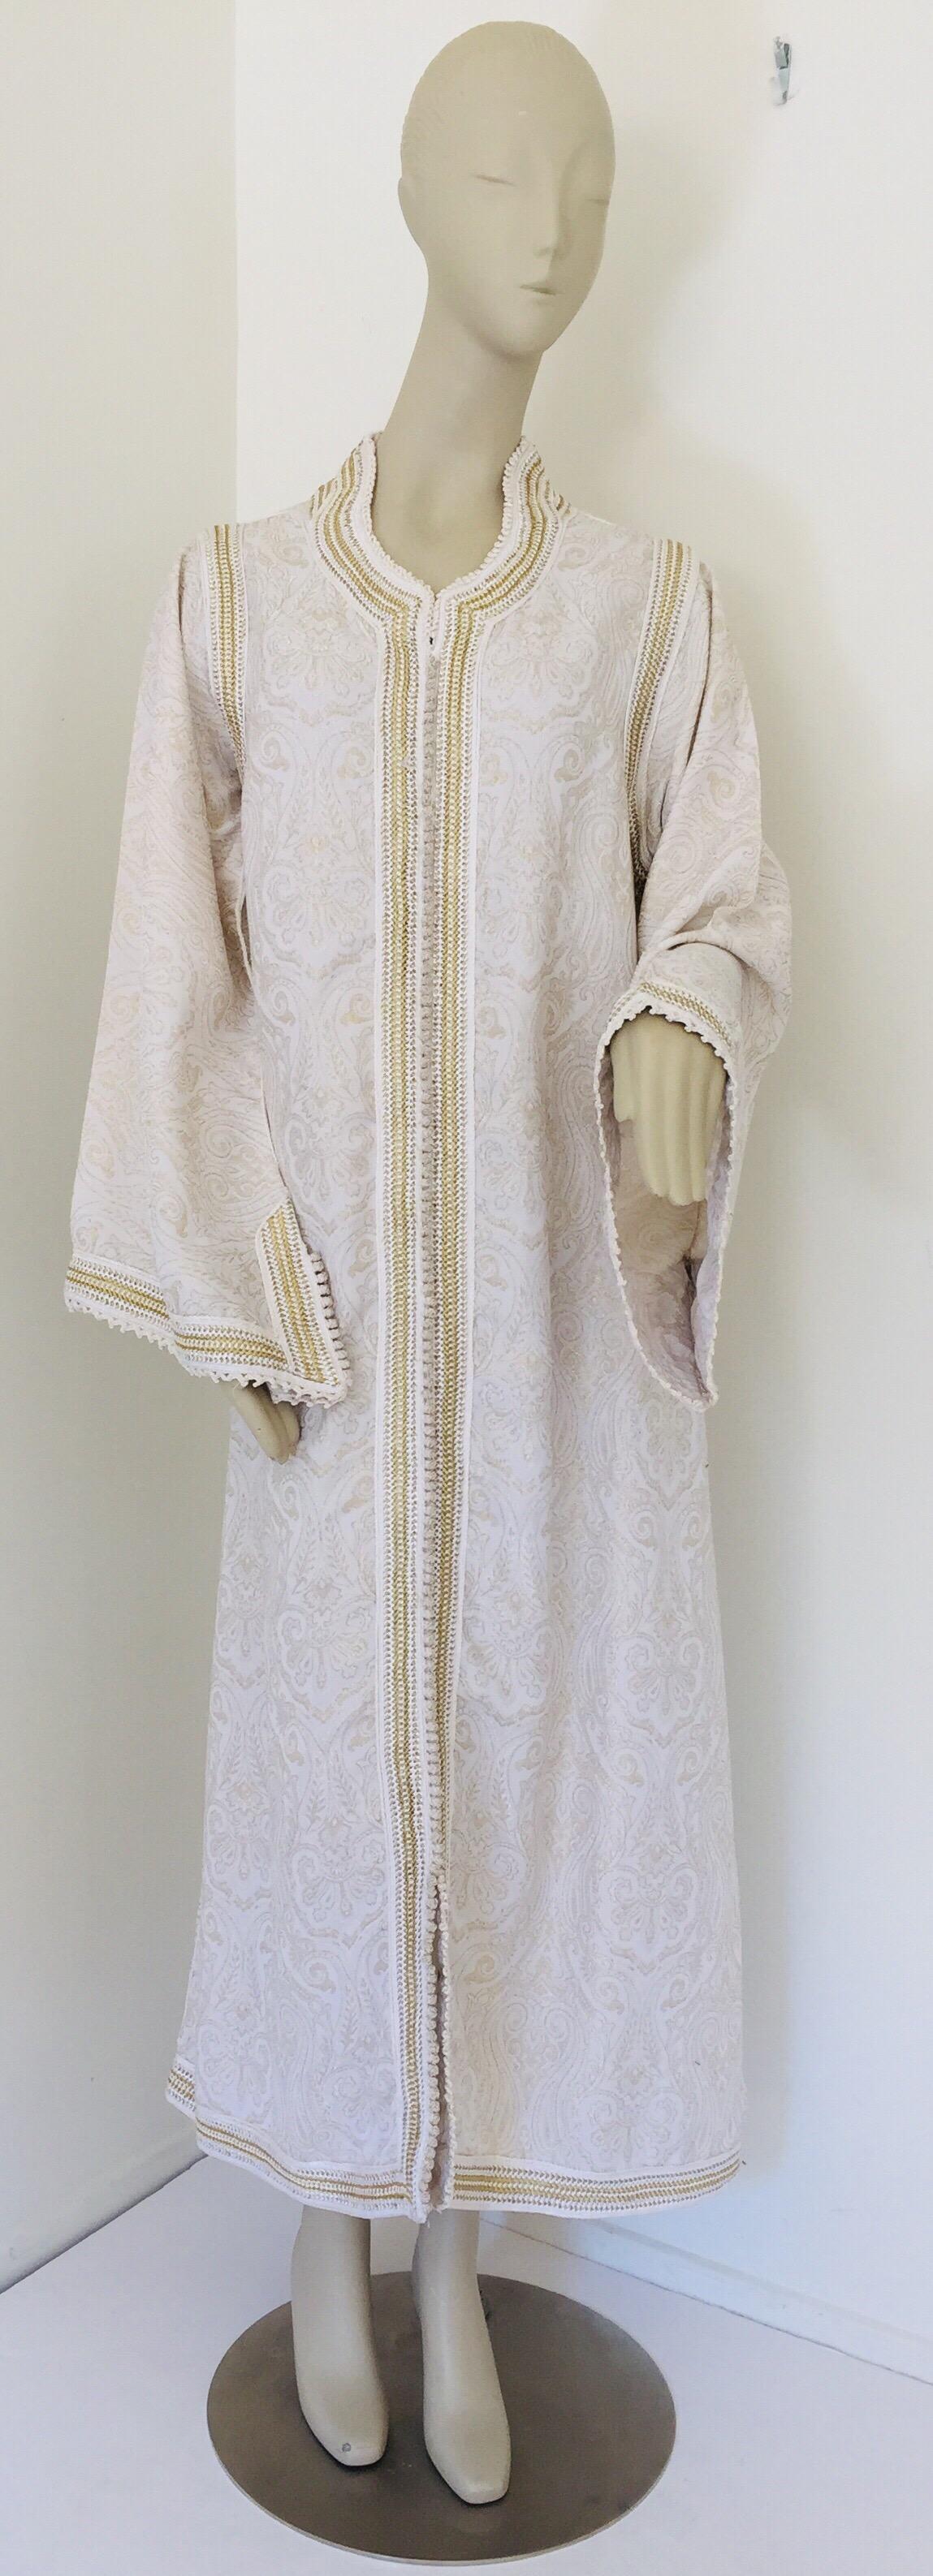 Elegant caftan marocain blanc brodé de fleurs avec des bordures dorées.
La garniture de cette longue robe maxi kaftan est brodée et embellie entièrement à la main.
Robe de soirée marocaine du Moyen-Orient, unique en son genre.
Le kaftan présente une